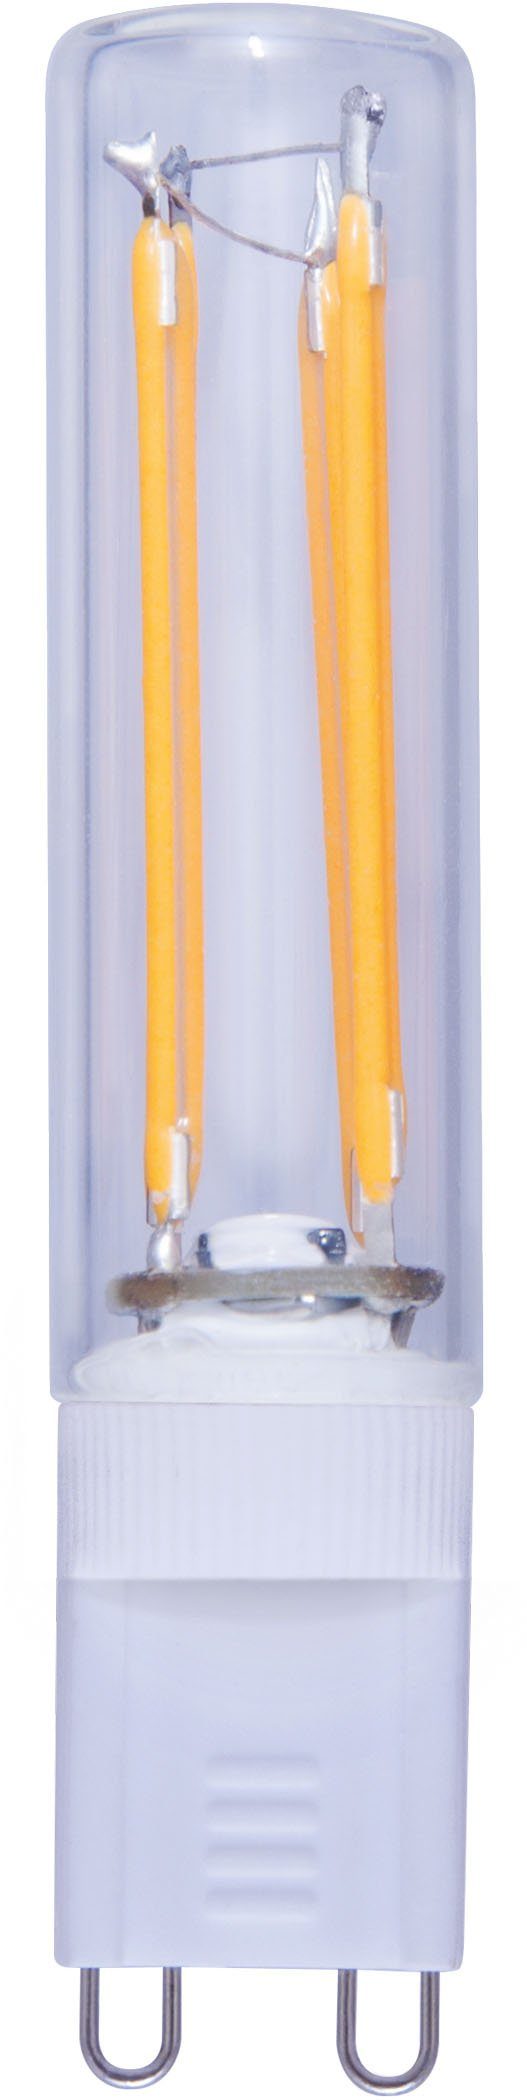 SEGULA LED-Leuchtmittel LED G9 Stift 2,5W 2700K klar, G9, Warmweiß, dimmbar, G9 Stift 2,5W 2700K, klar